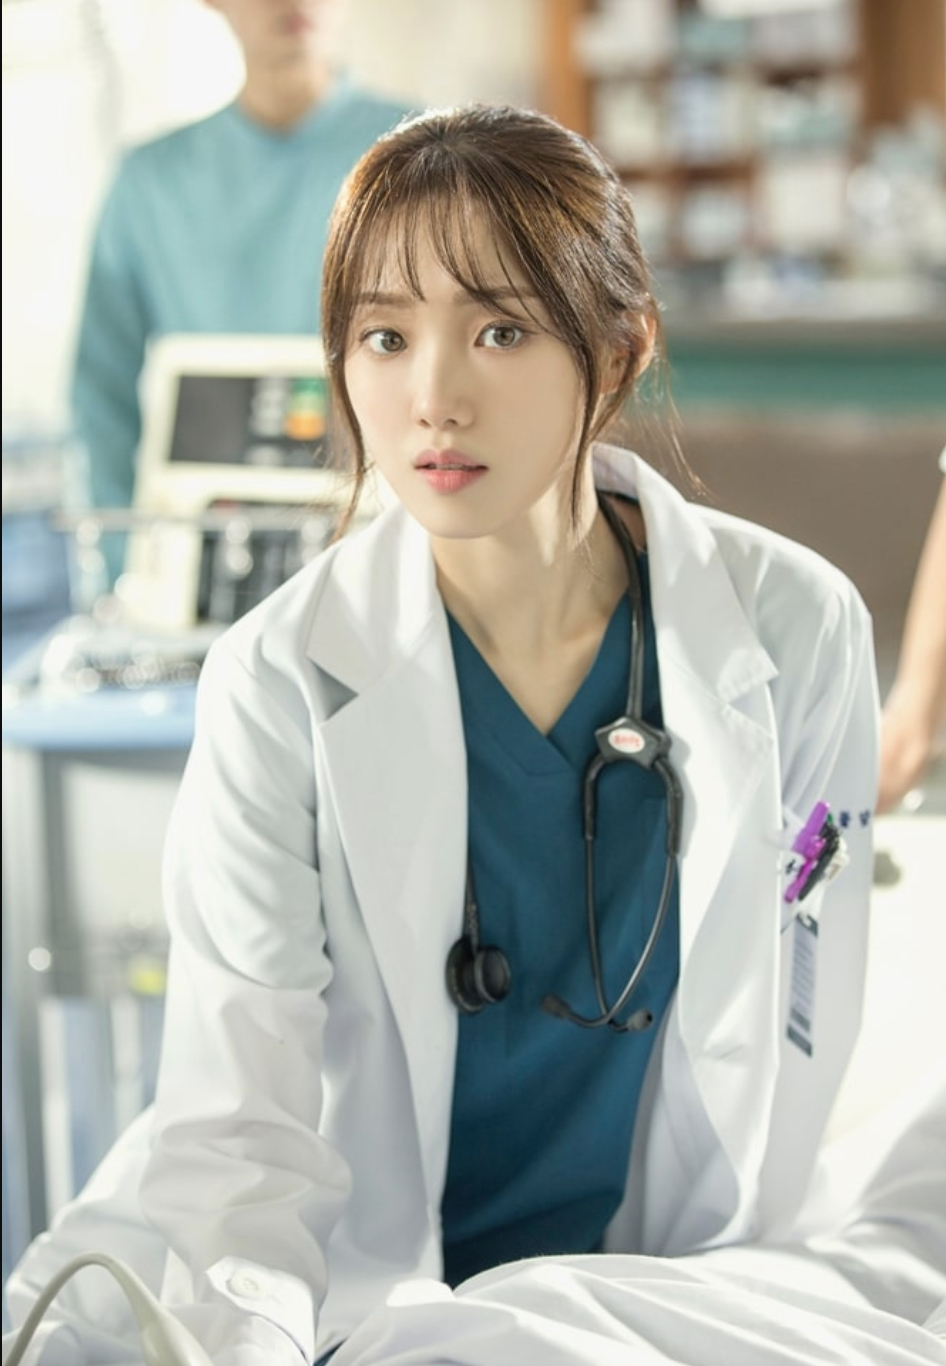 Chuyện tình bác sĩ - Doctors (2016)